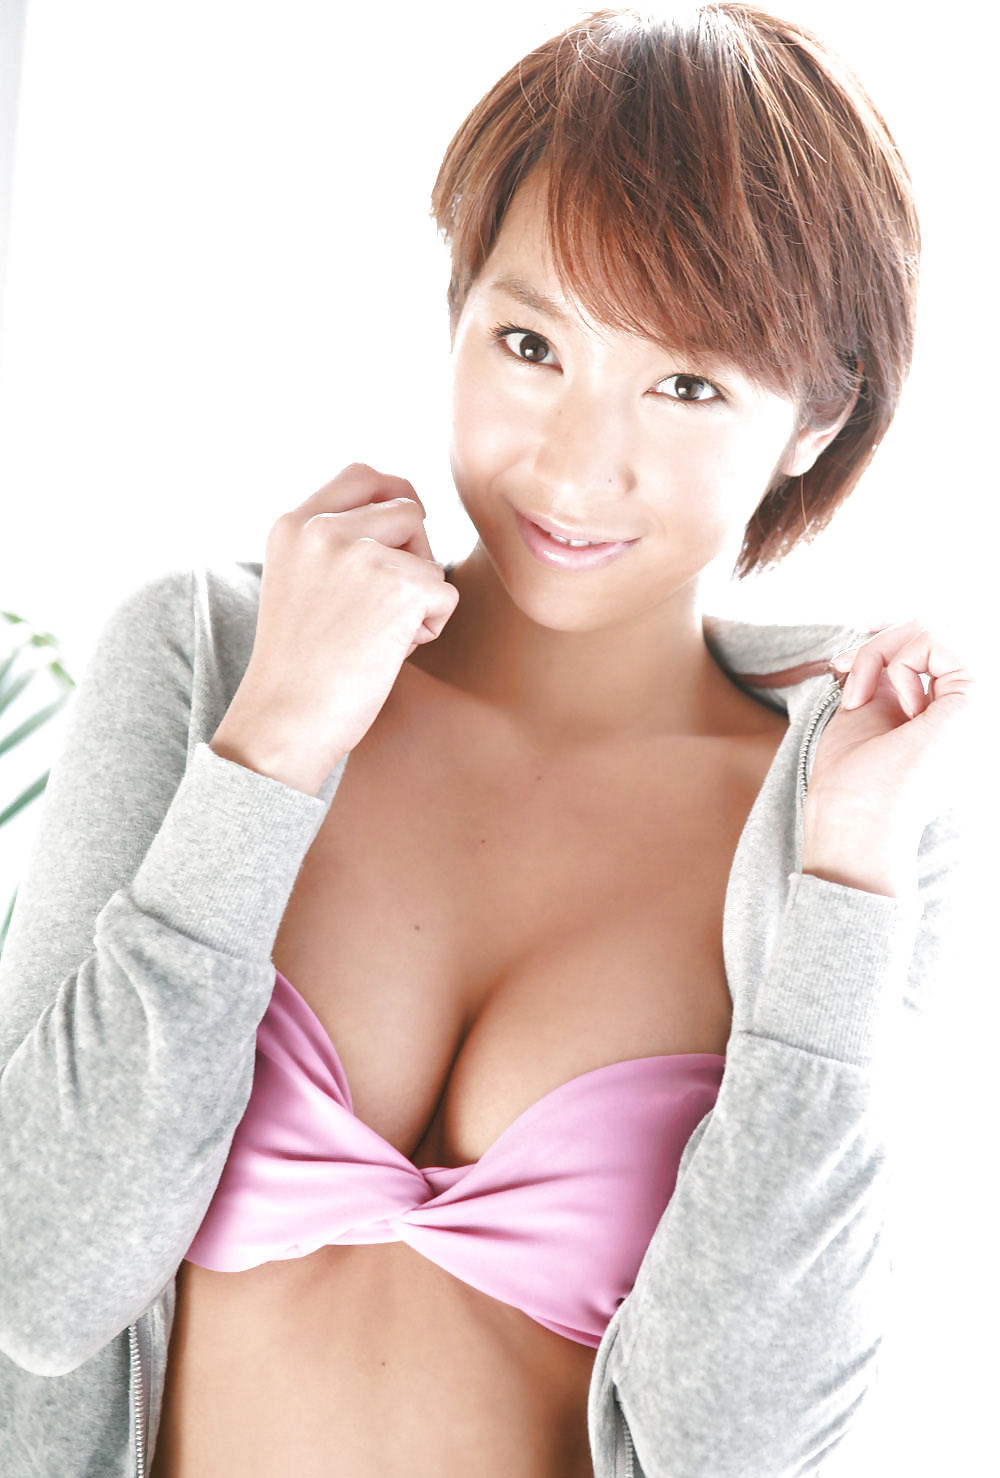 Japanese Bikini Babes Ayumi Porn Pictures Xxx Photos Sex Images 406959 Pictoa